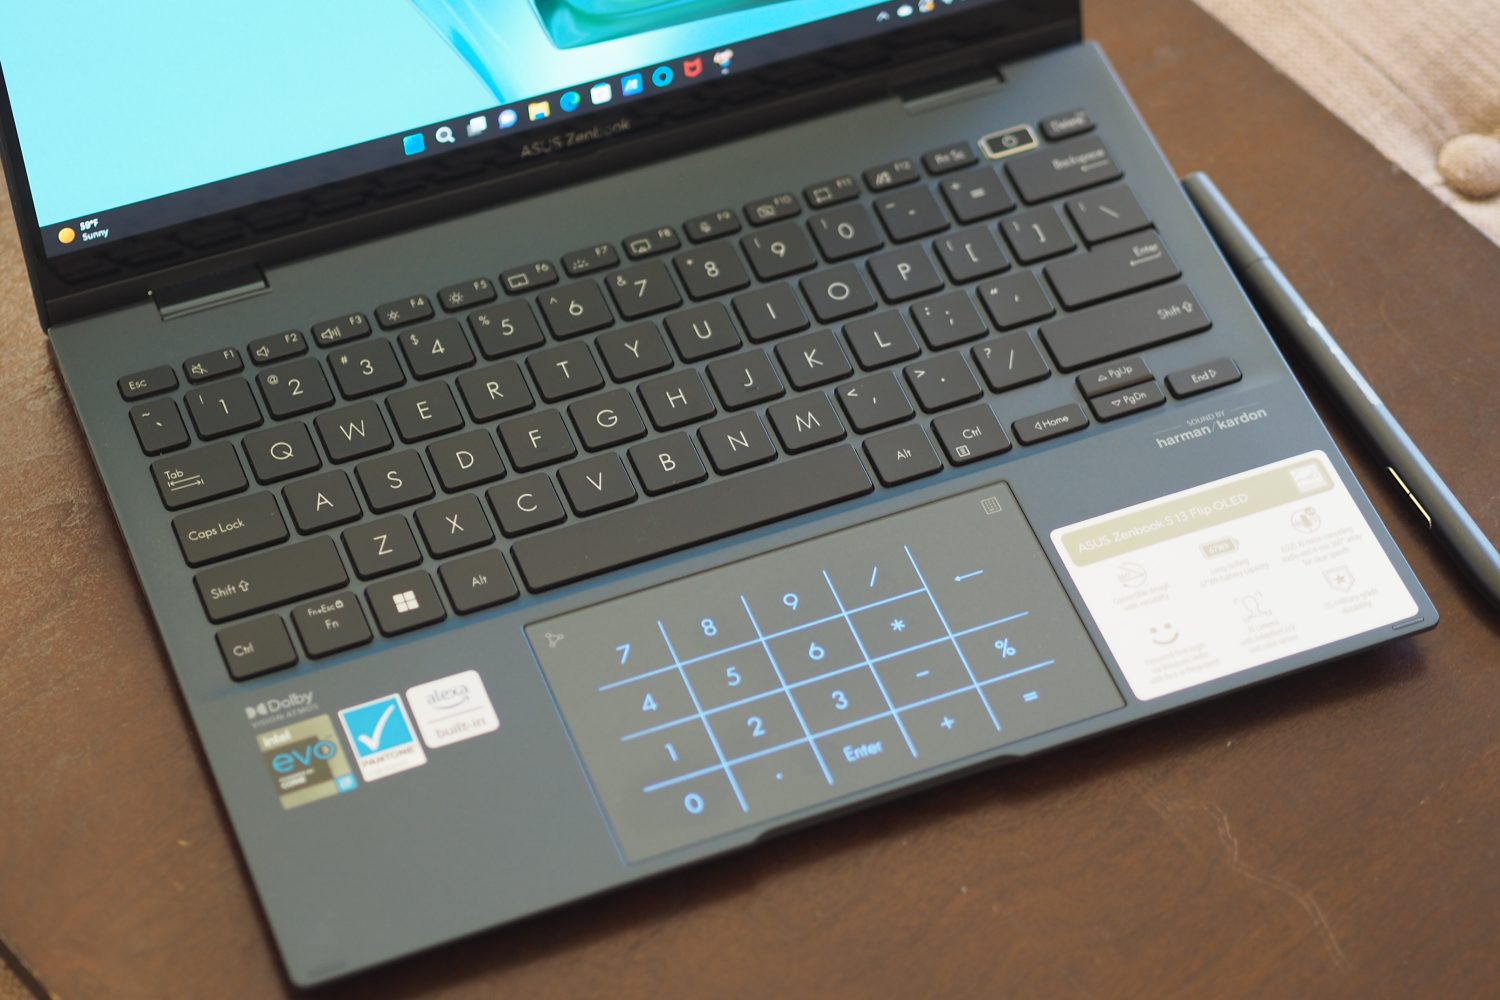 Asus ZenBook S 13 Vire a vista de cima para baixo mostrando o teclado e o touchpad.